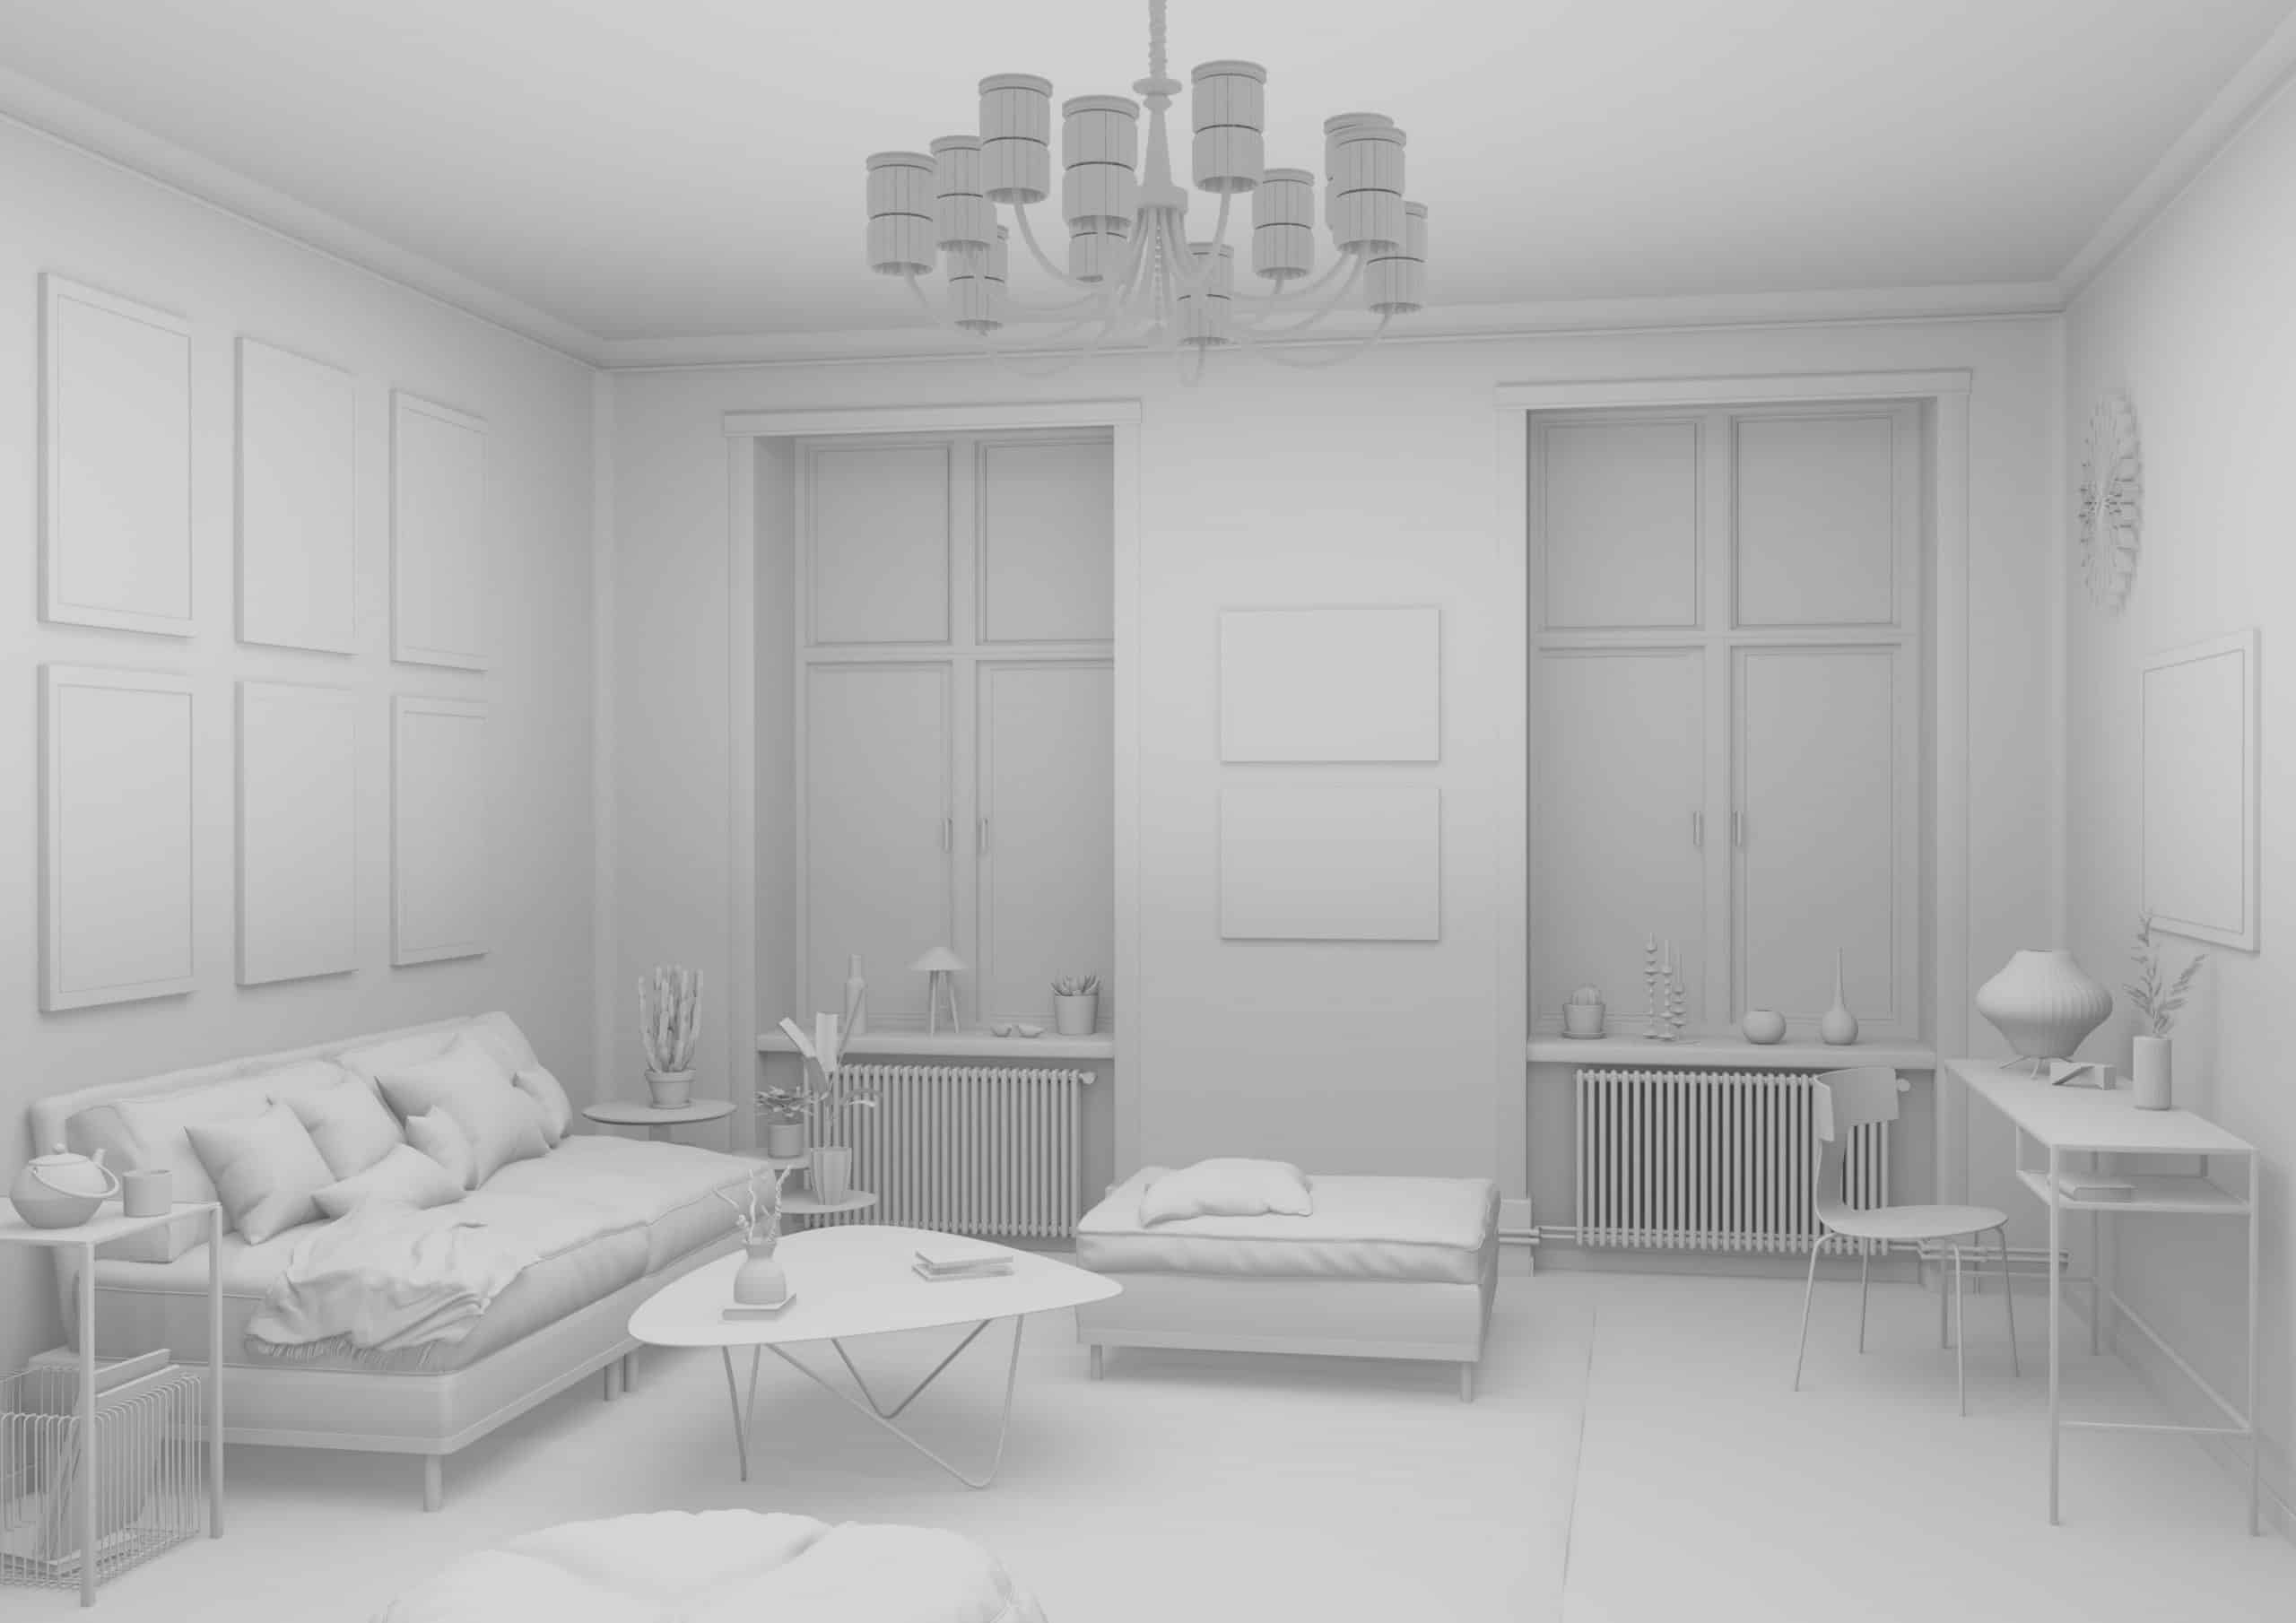 Unbearbeitete Ansicht | Wohn­zim­mer | 3D-Visualisierung, Architecture, Campaign, Interieur | freie Arbeit: Entwurf, CGI/3D, Modellierung, Lightning, Shading, Rendering